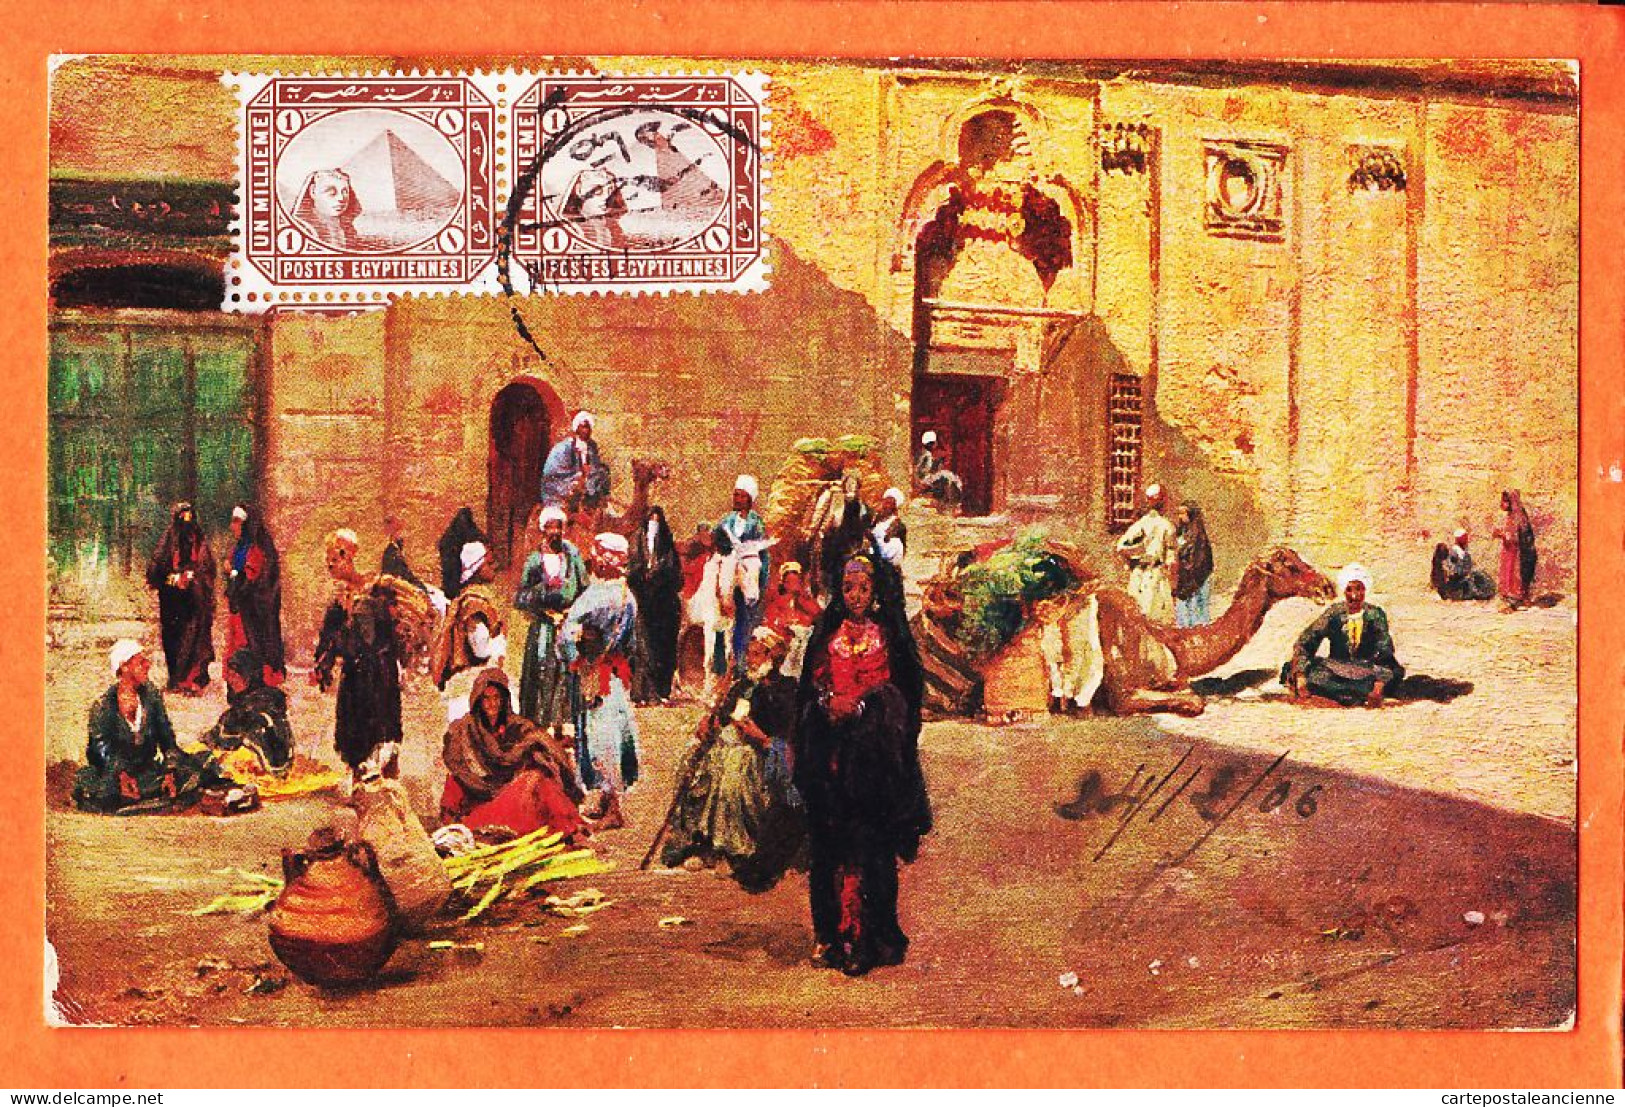 09954 / ⭐ LE CAIRE Egypte ◉ Scène De Rue Types People CAIRO KAIRO 1906 à PENTECOUTEAU Paris ◉ Il. WUTTKE ? ◉ Litho R-128 - Le Caire